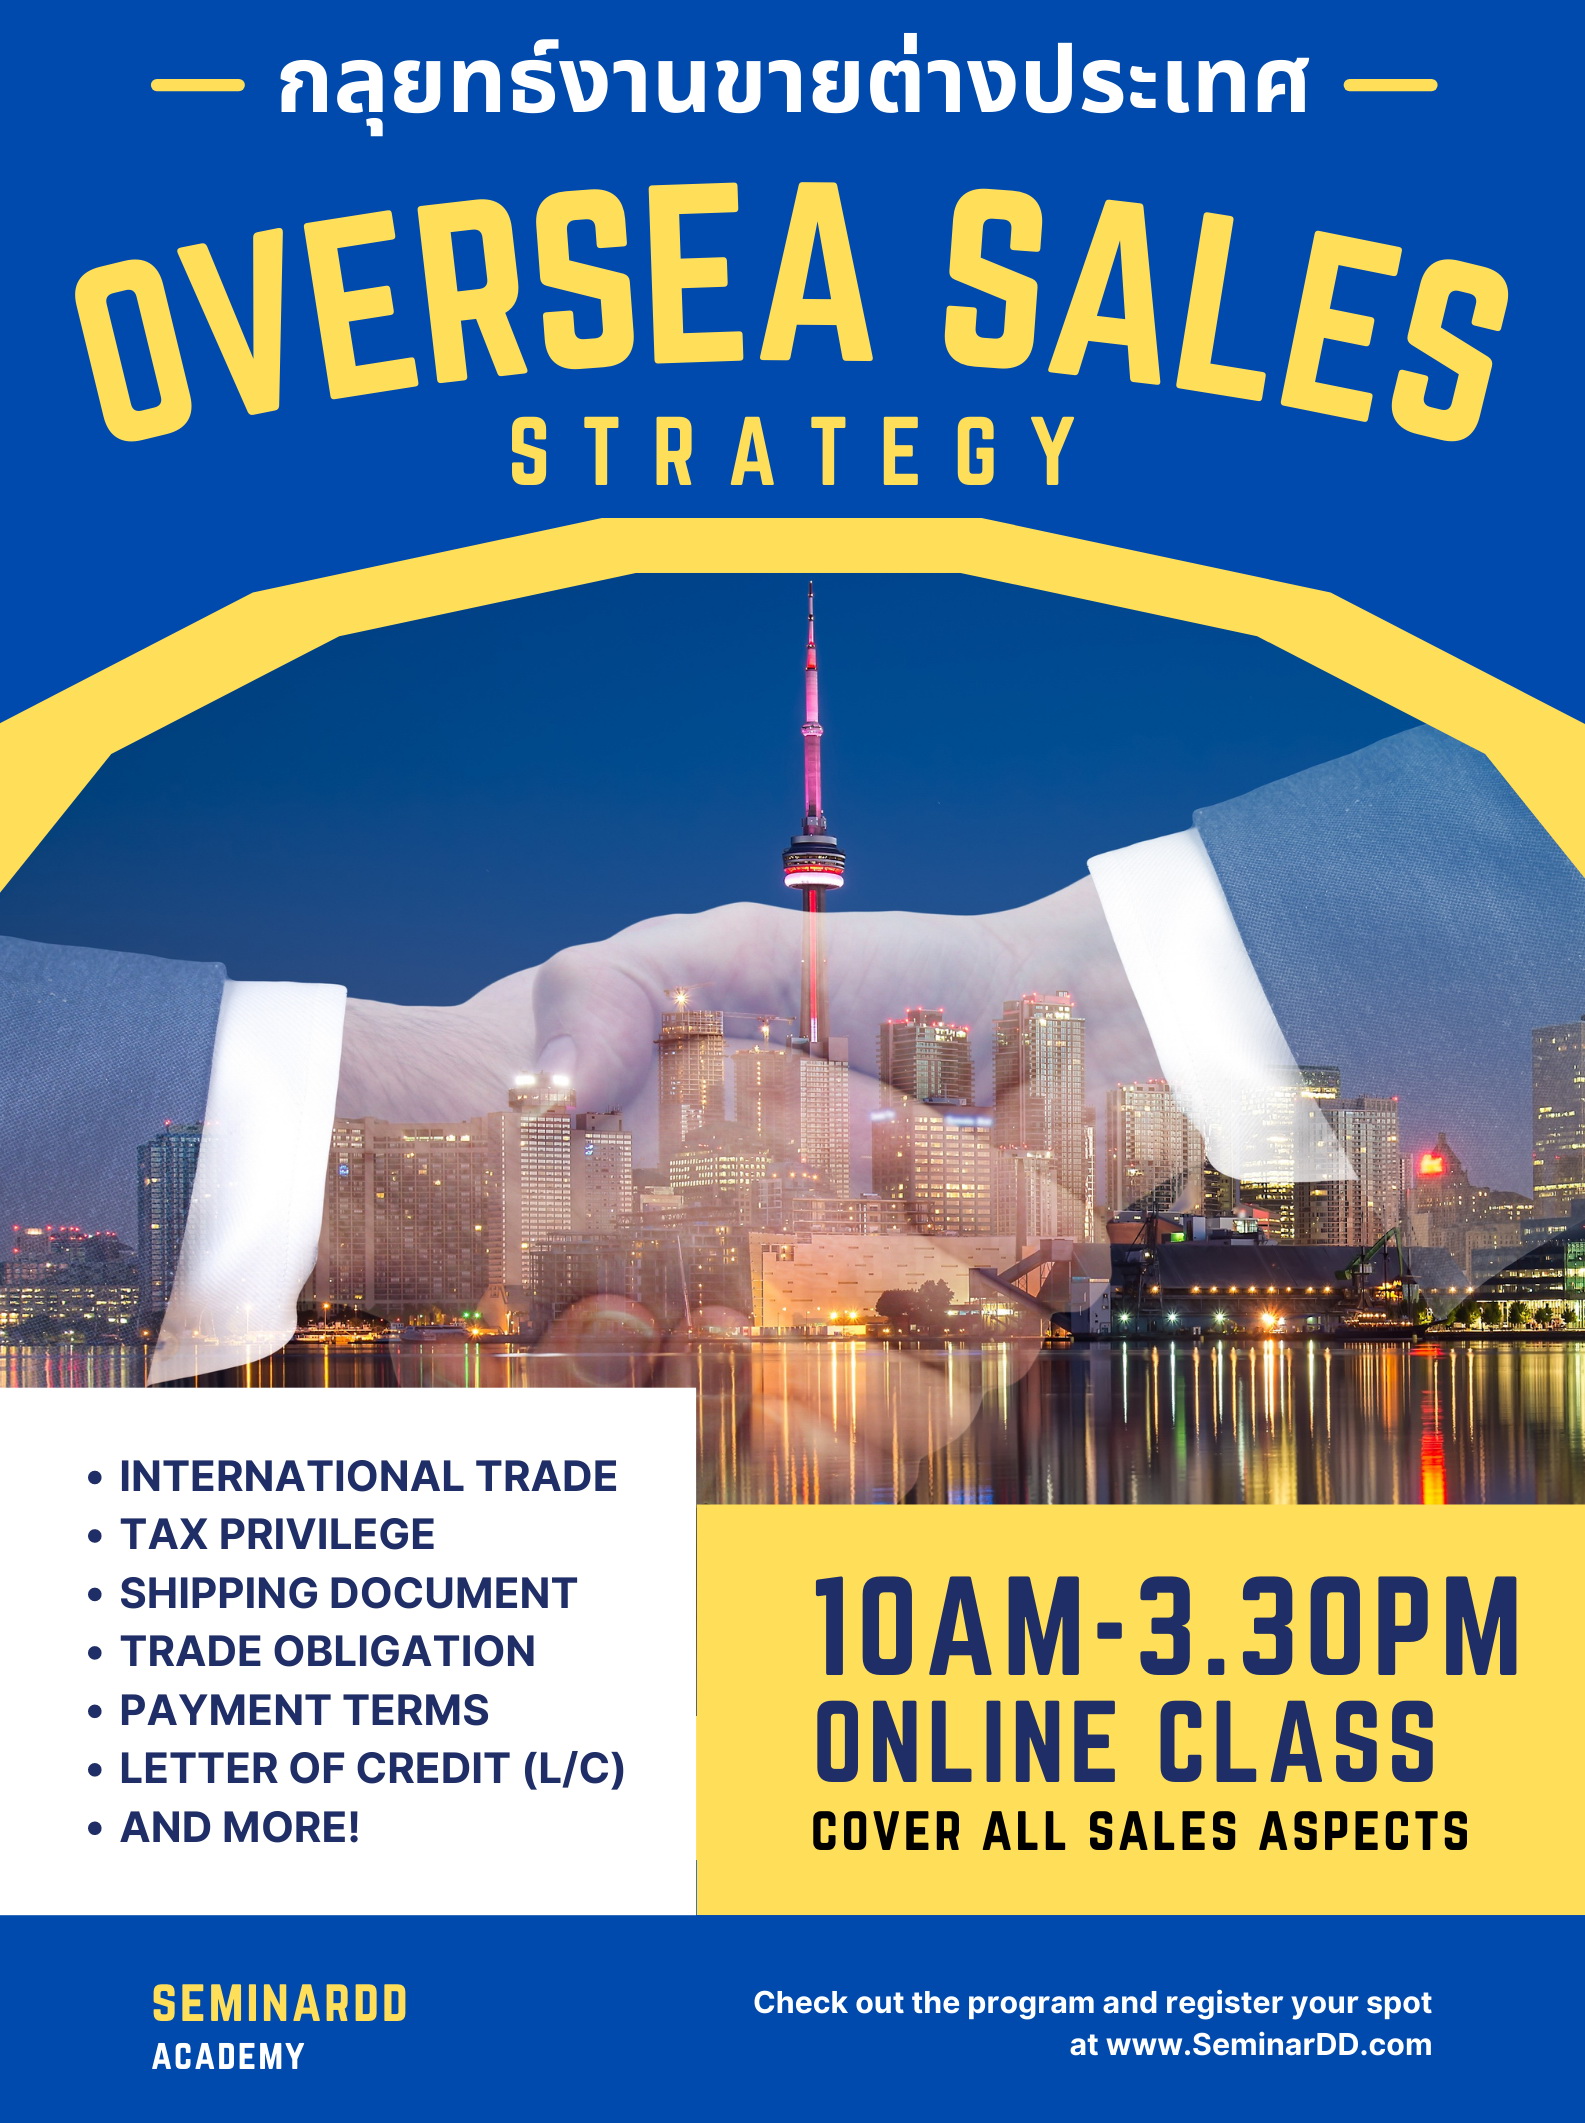 งานขายต่างประเทศ (Oversea Sales)